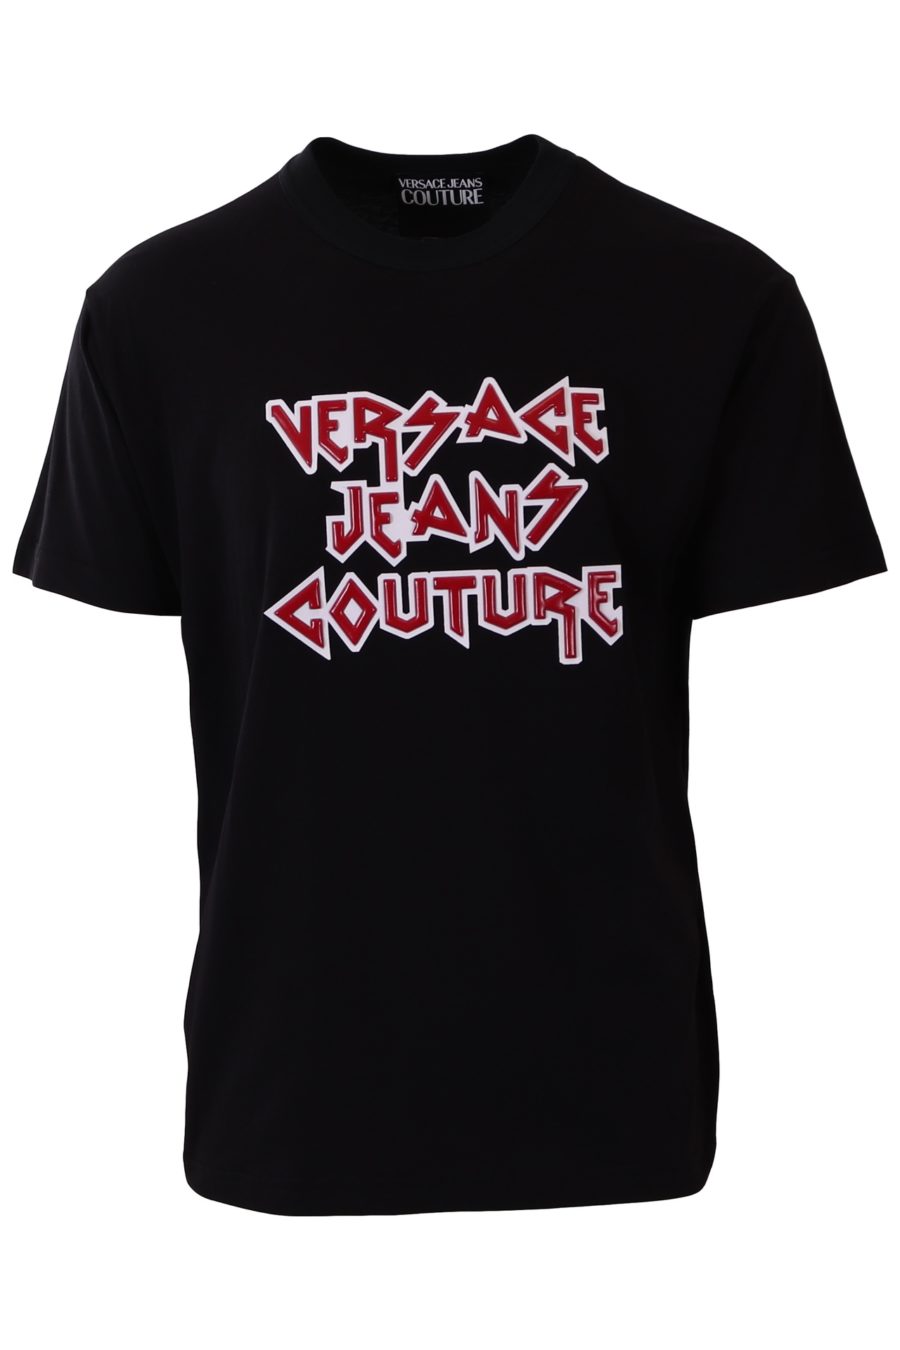 Camiseta Versace Jeans Couture negra rock - 58615c5a487451b6c88a93476c20d04f37c73b8d